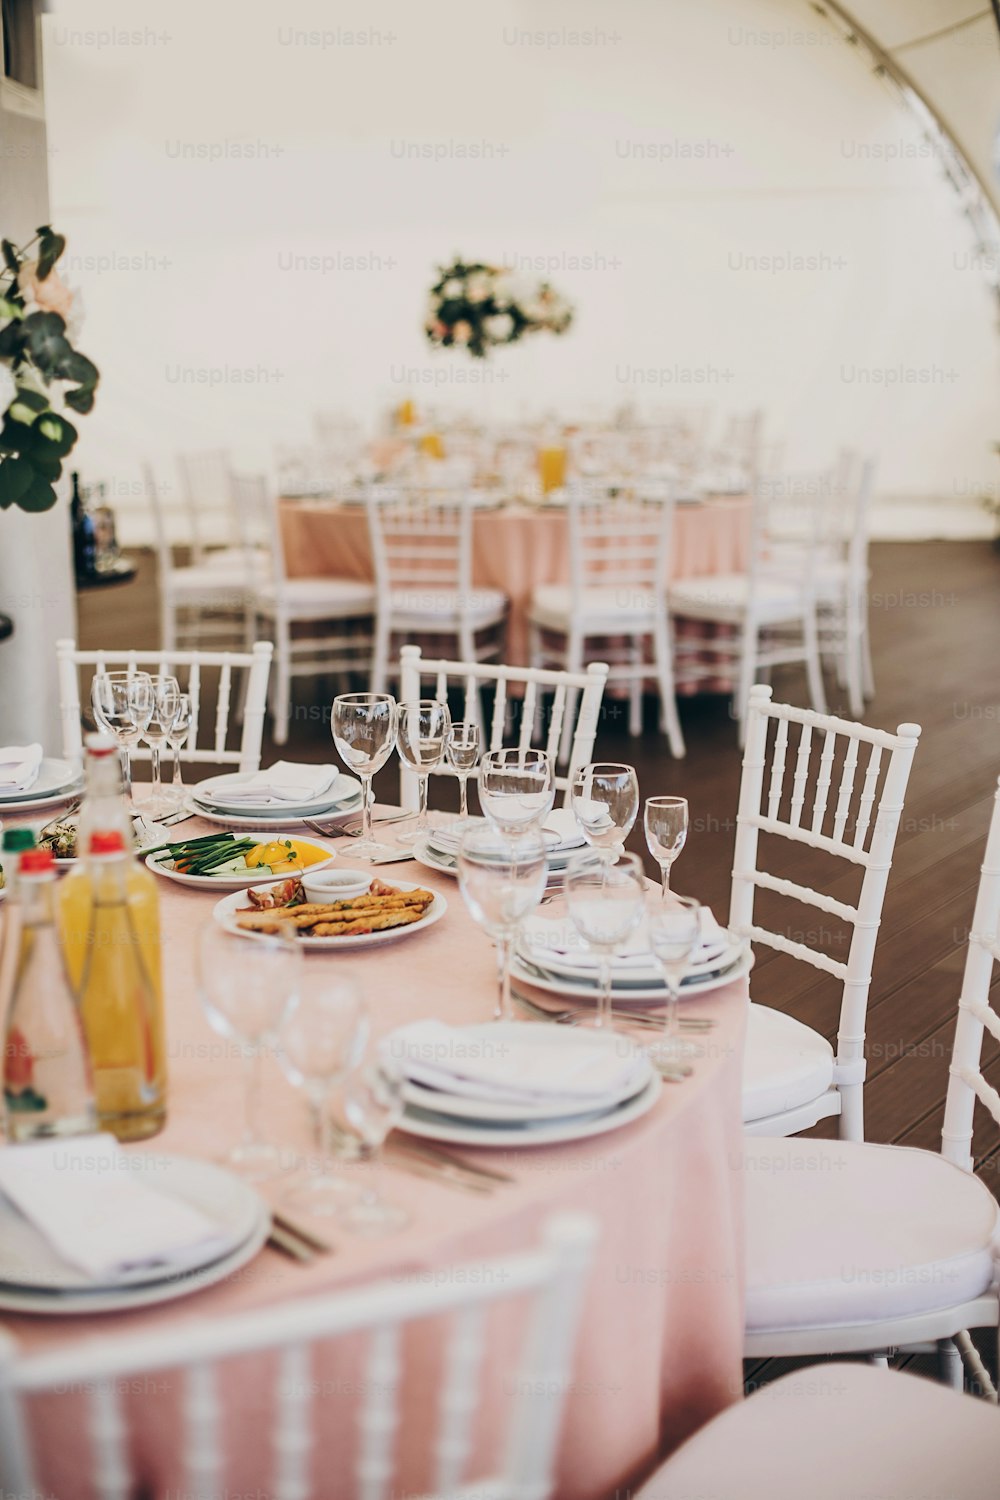 Centre de table rose élégant avec des couverts en argent, des verres à vin, des assiettes vides, de délicieux plats servis sur un tissu rose lors d’une réception de mariage au restaurant. Restauration de luxe